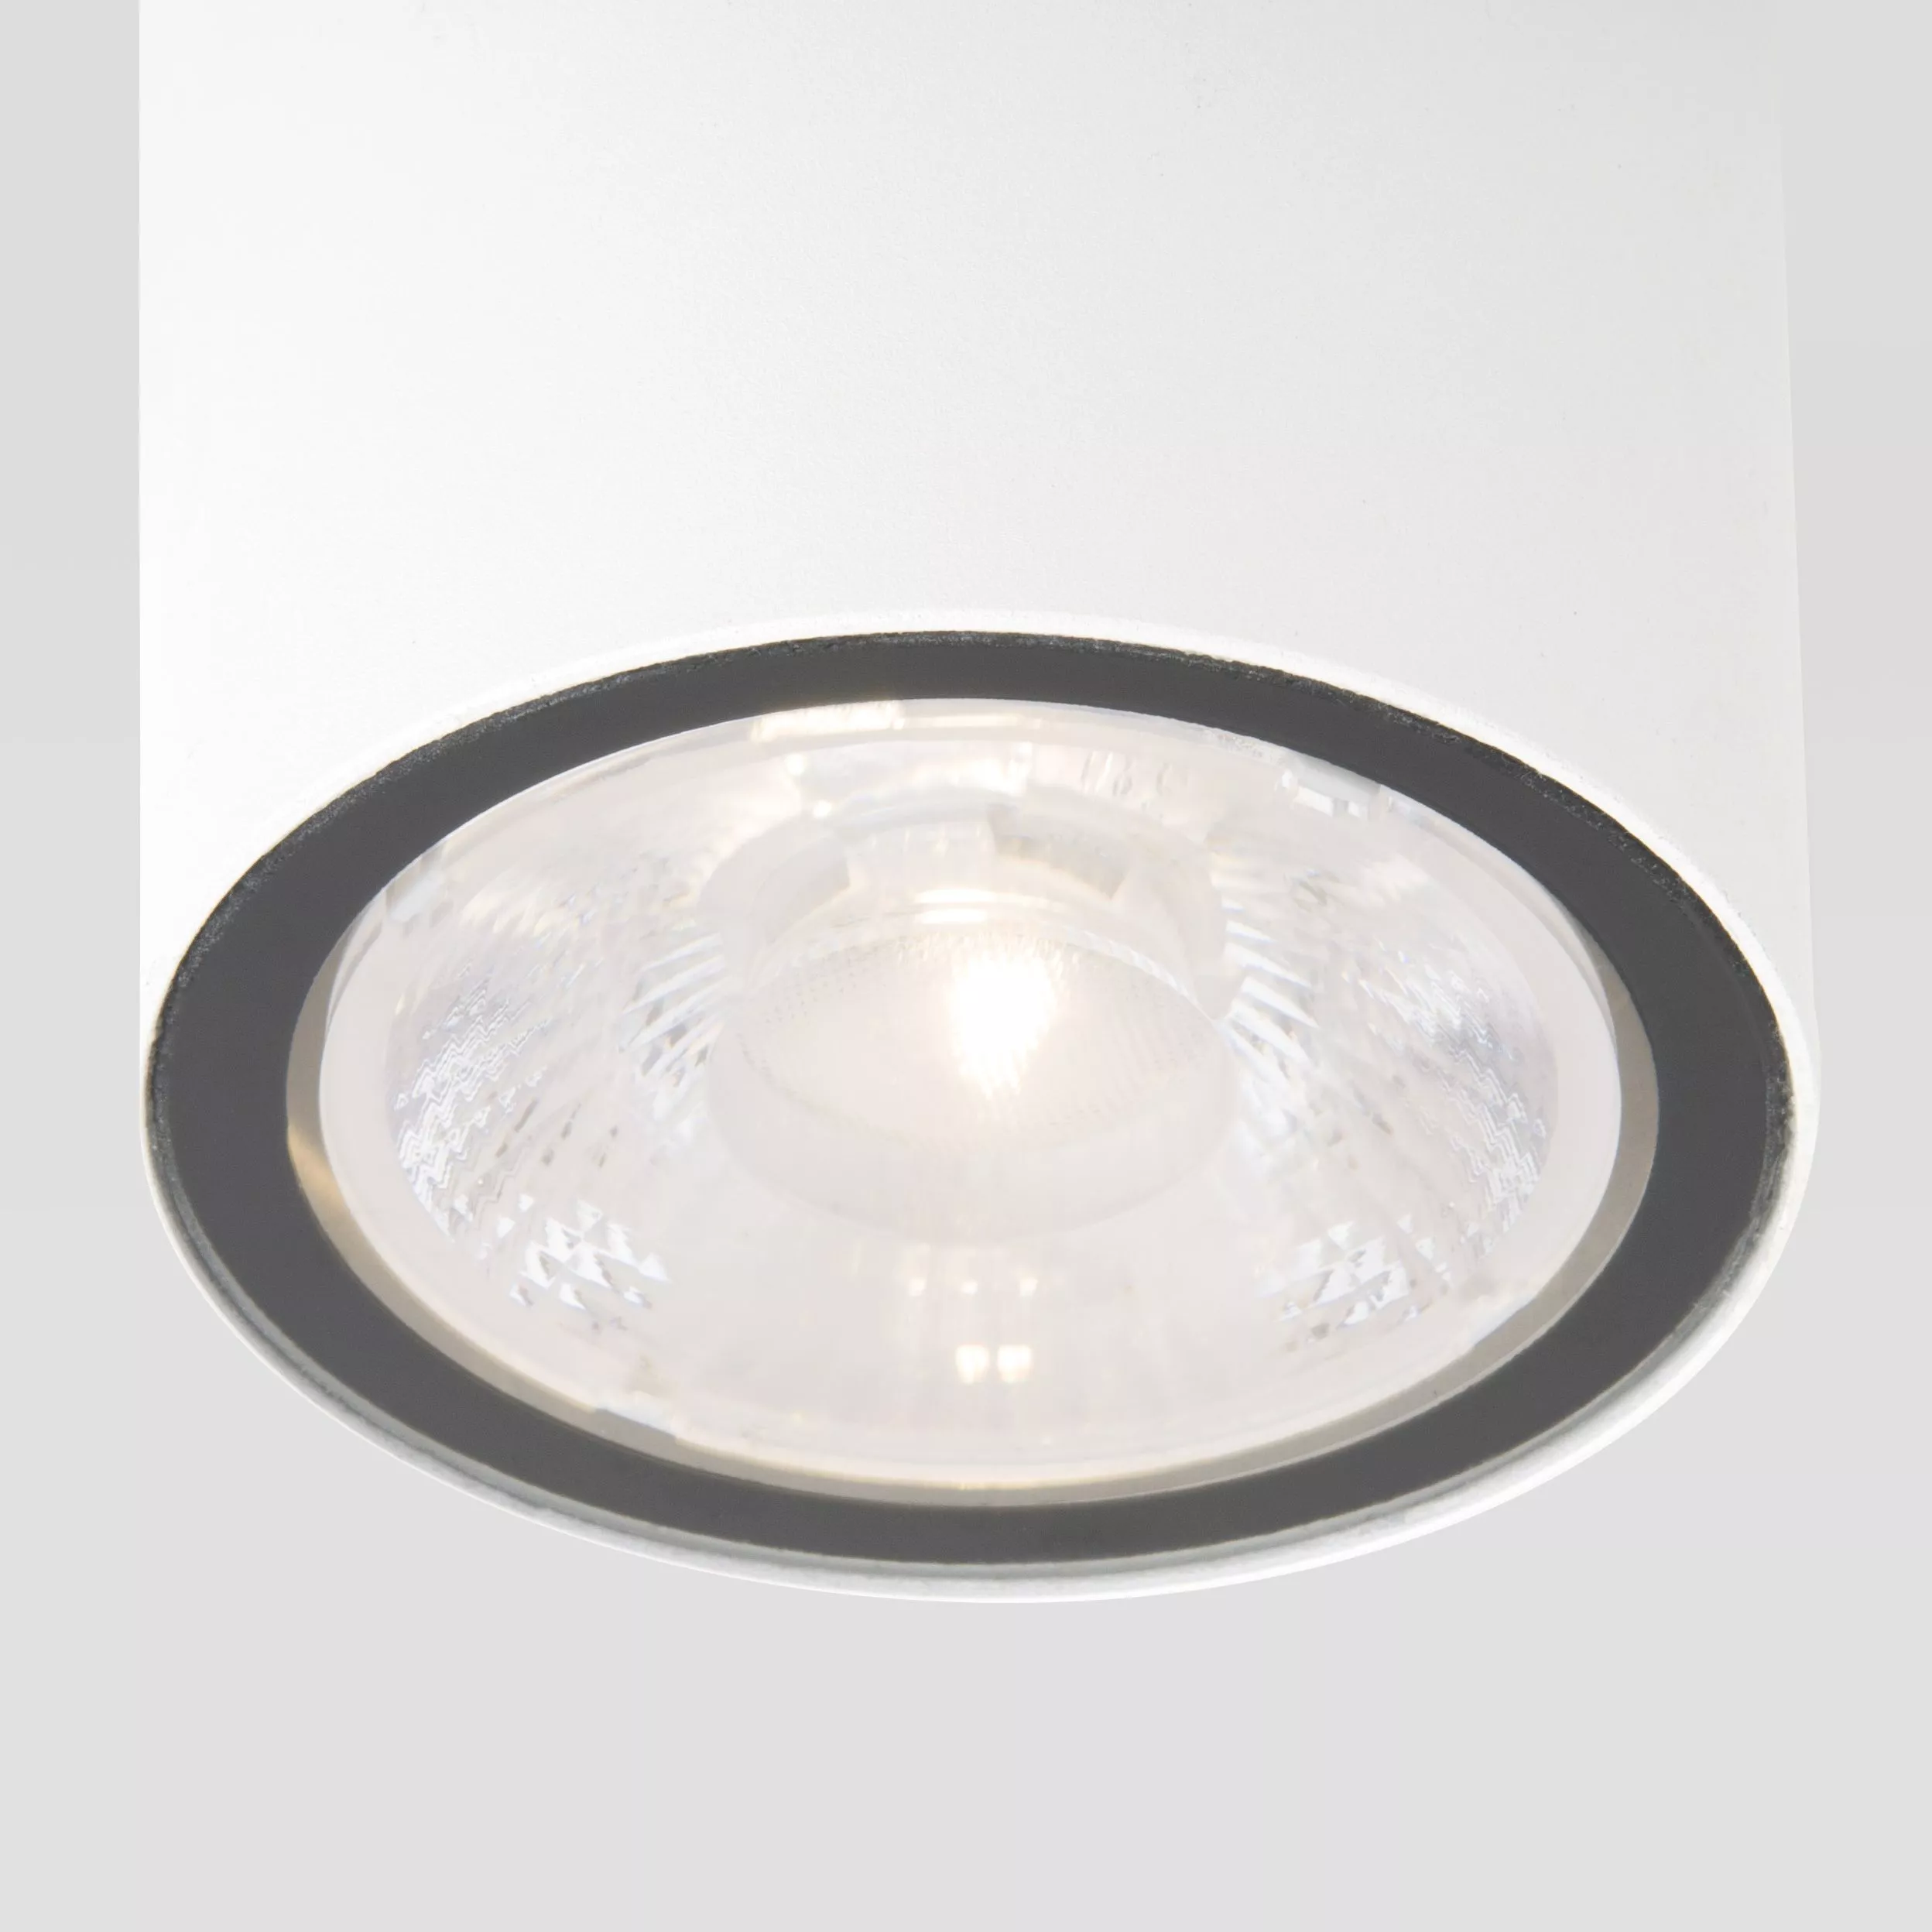 Точечный накладной светильник Elektrostandard Light LED 35131/H белый